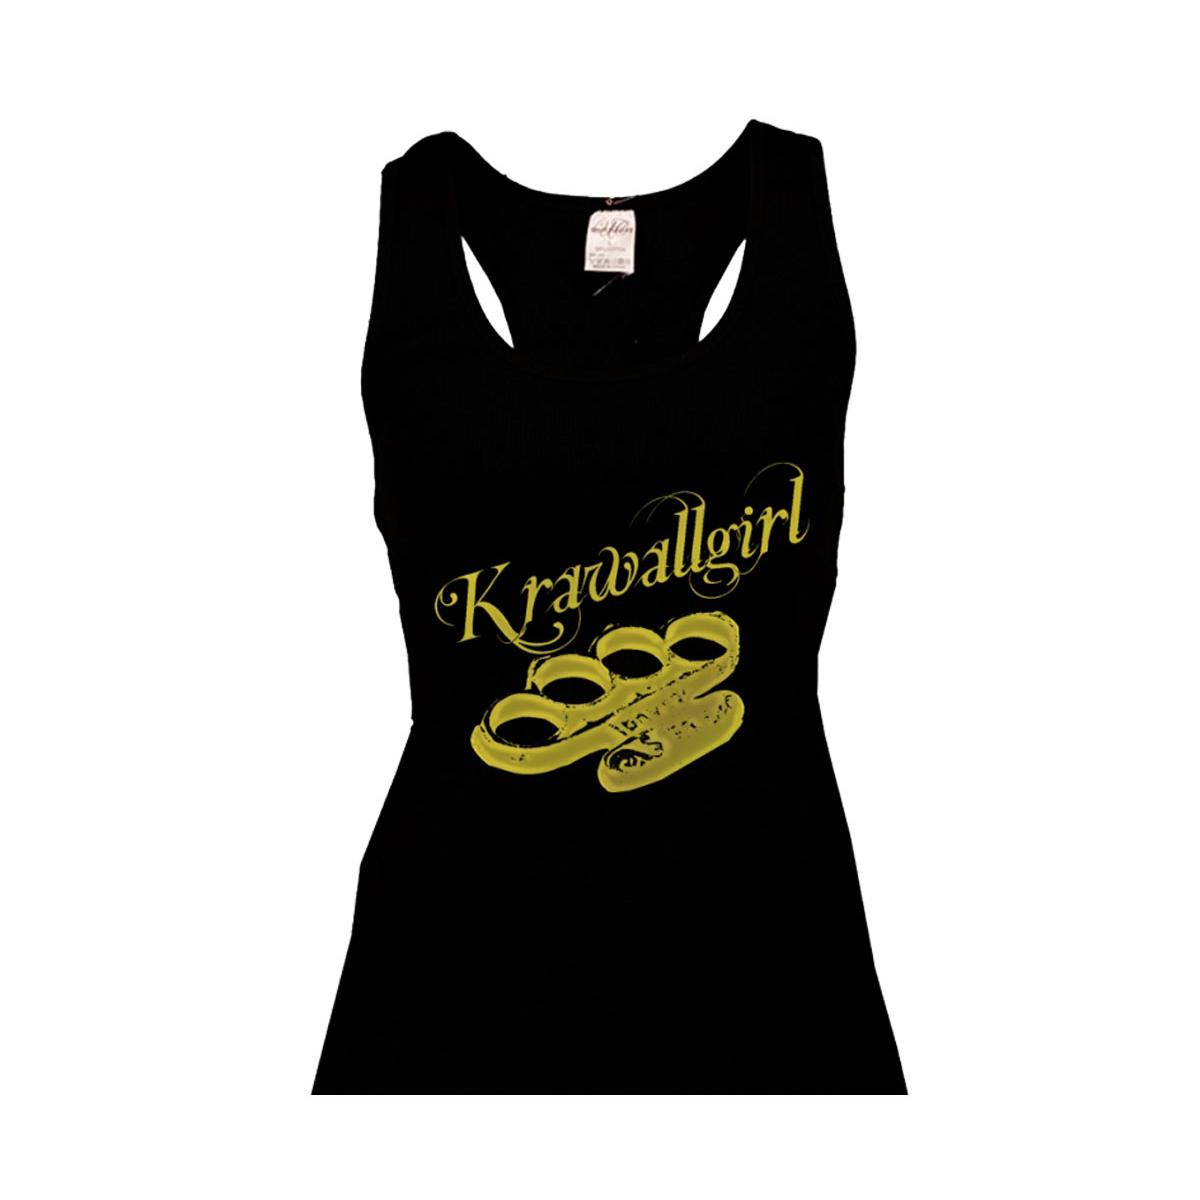 Krawallgirl - Schlagring - Frauen Top - schwarz-gold